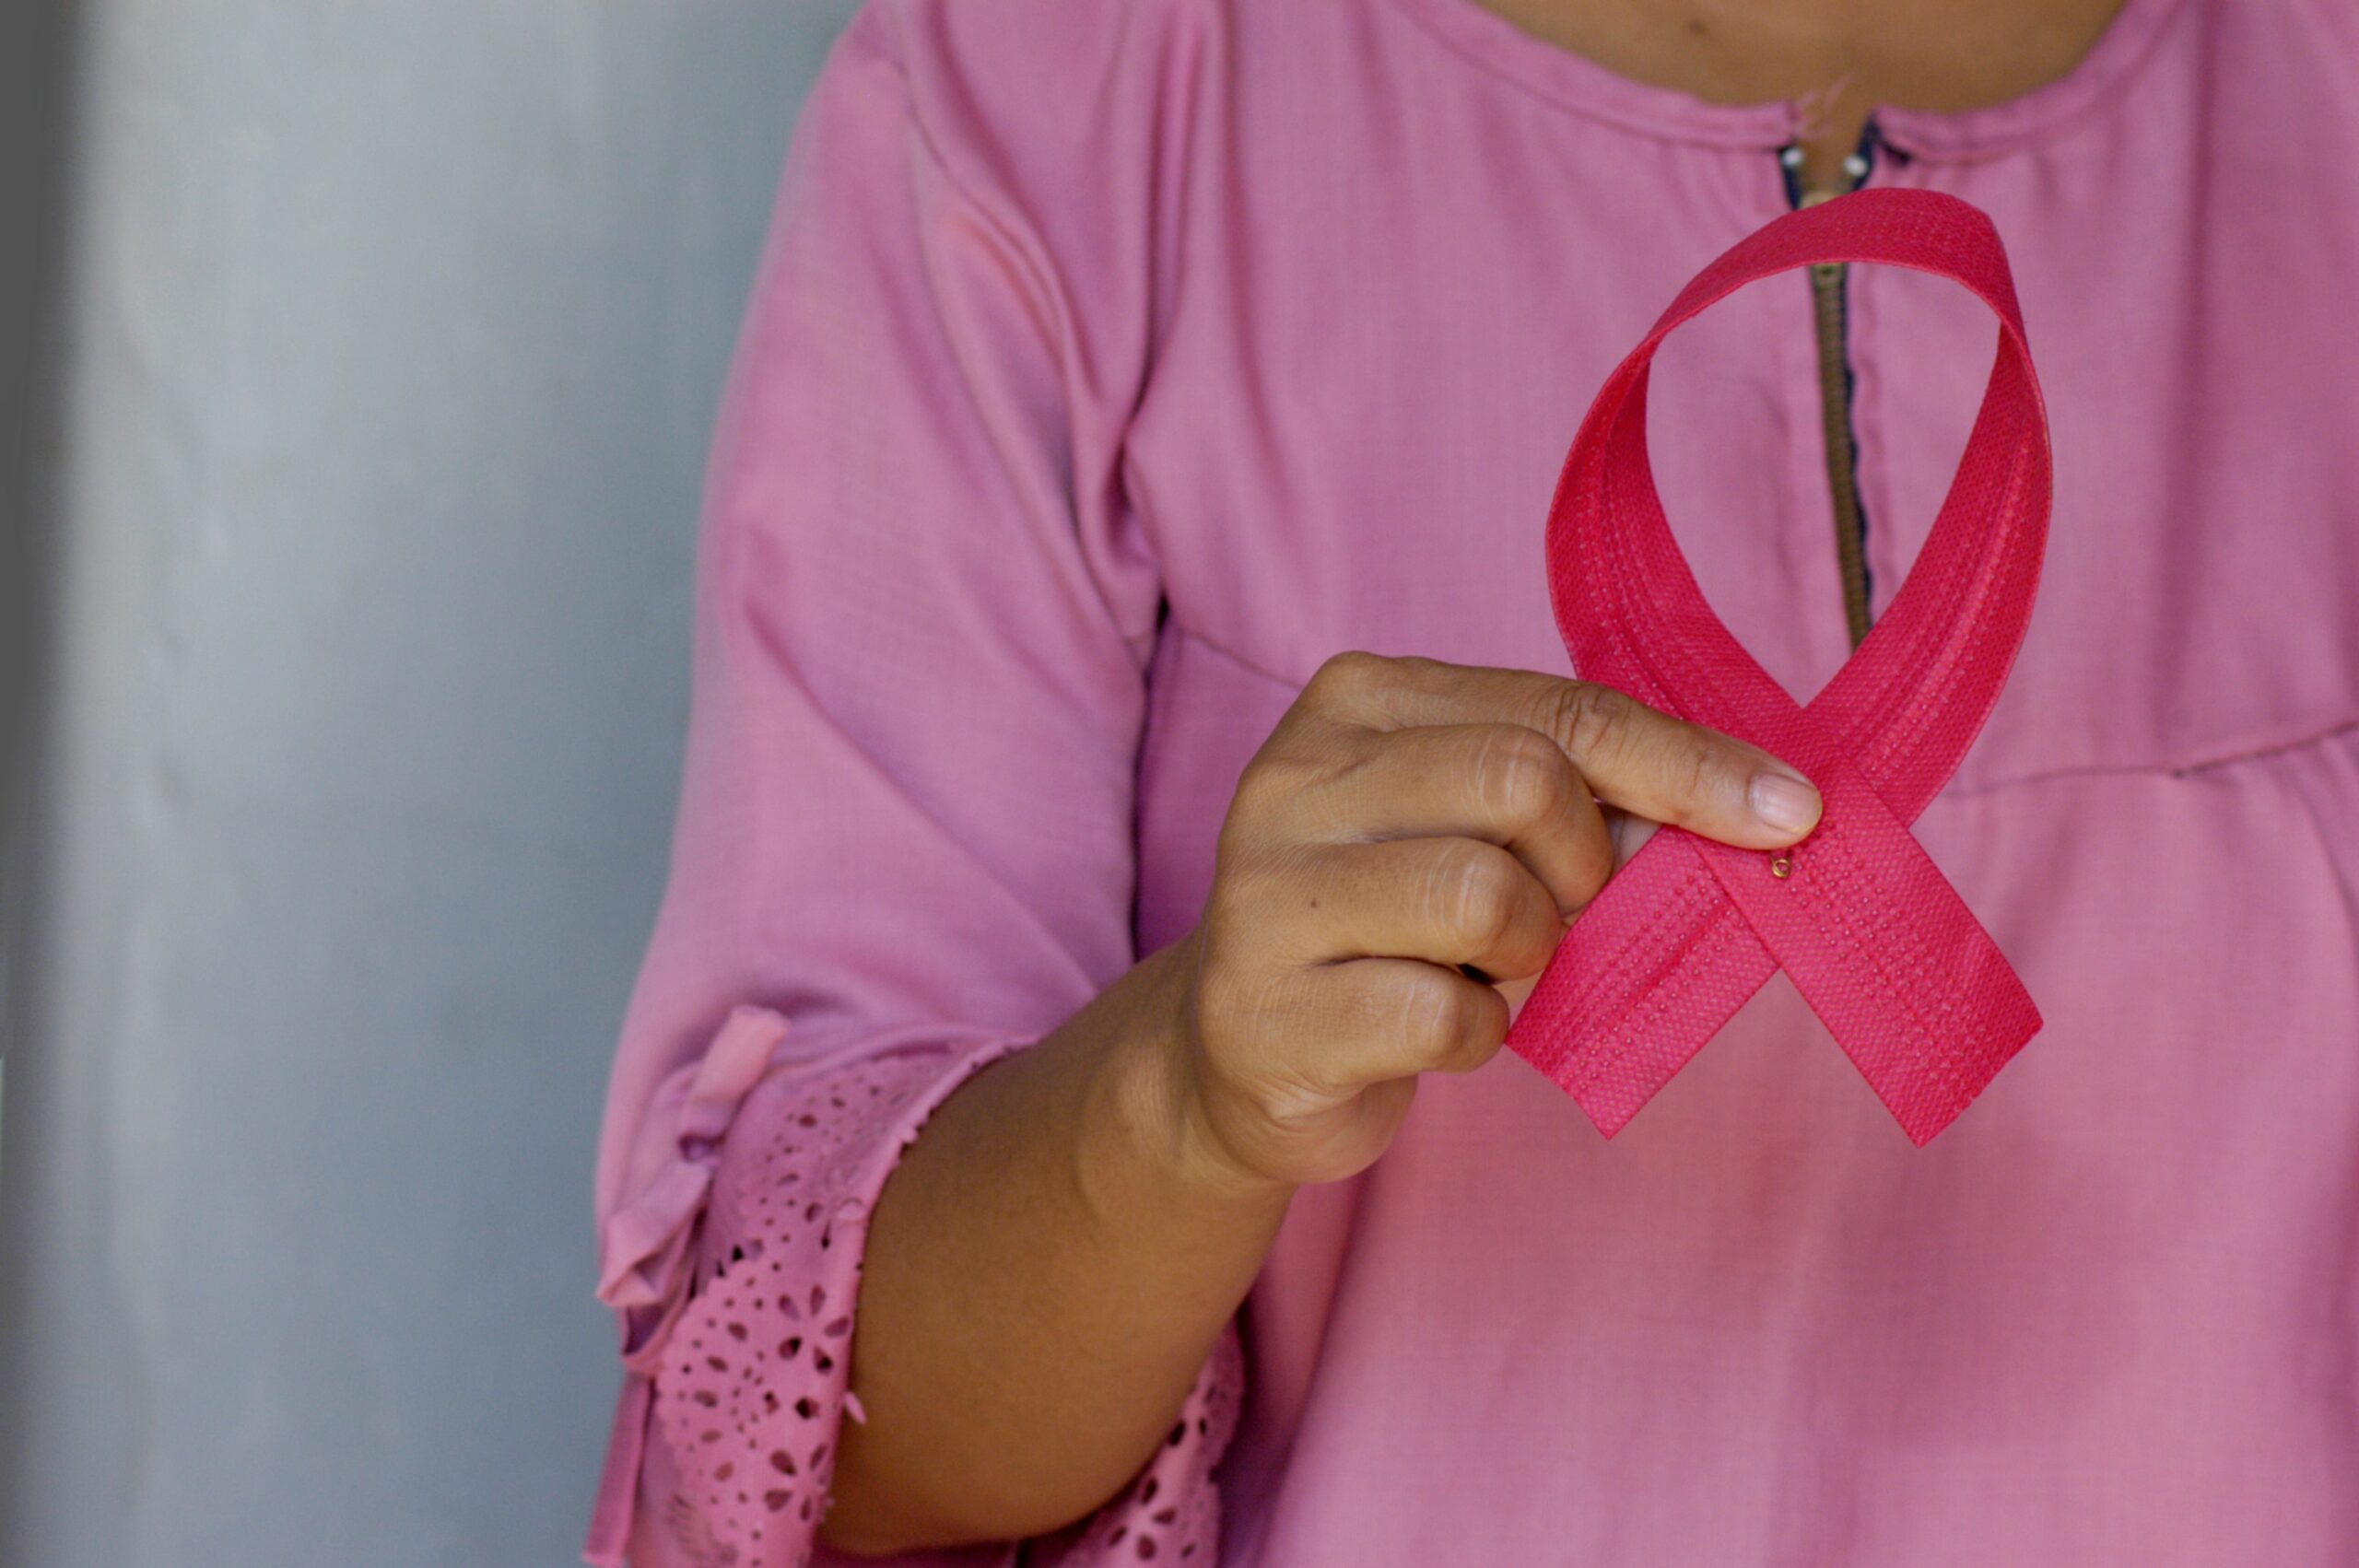 Październik miesiącem walki z rakiem piersi. Jak dbać o piersi? Przypominamy o regularnych badaniach!